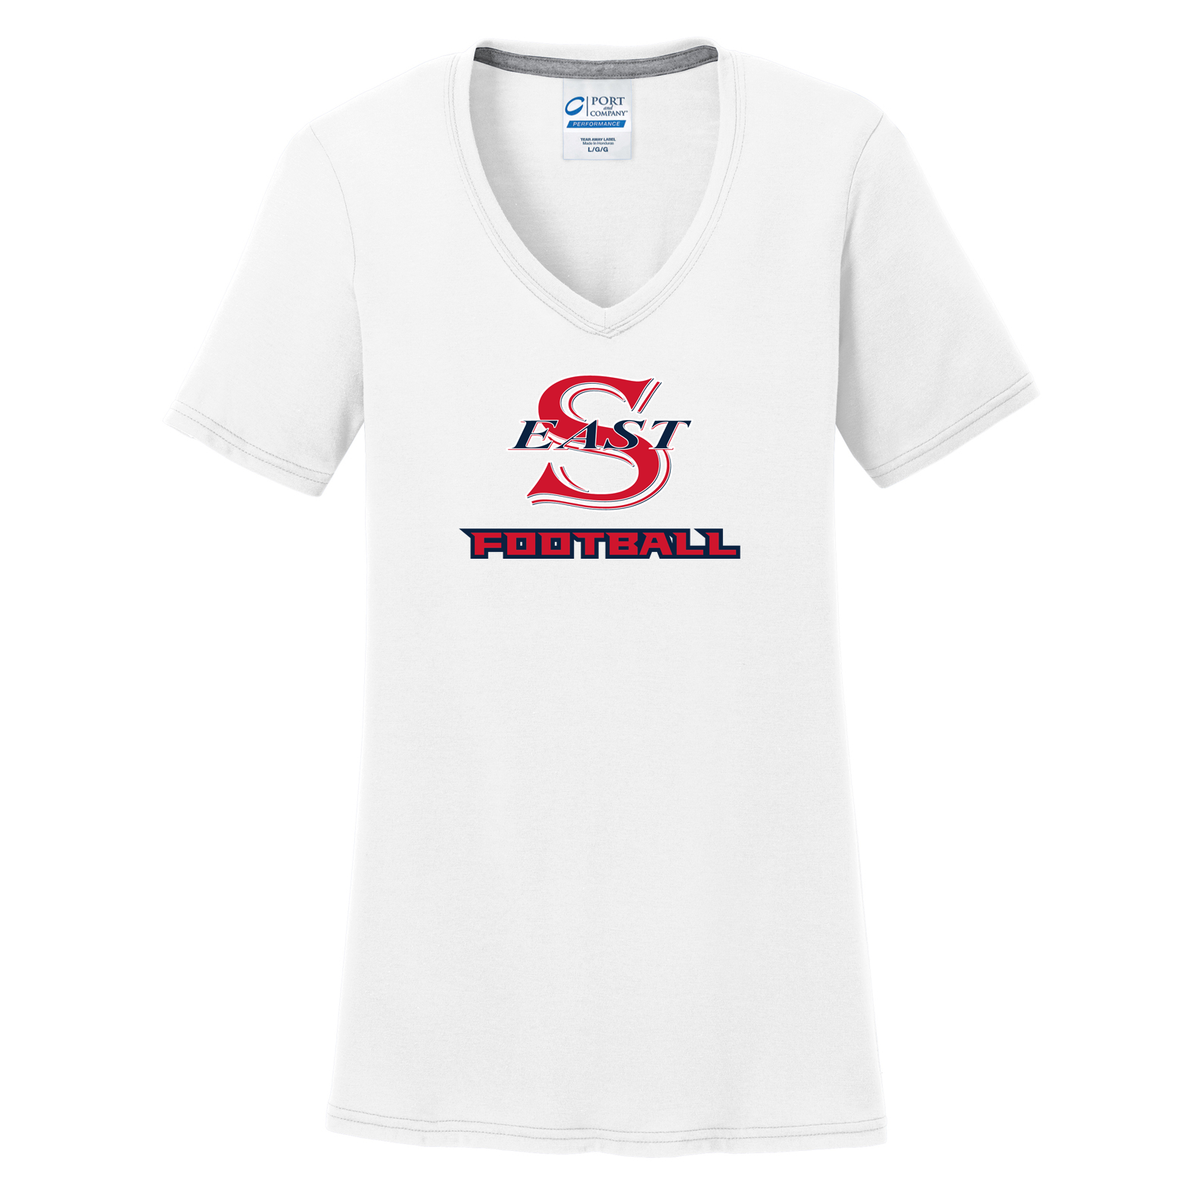 Smithtown East Football Women's T-Shirt